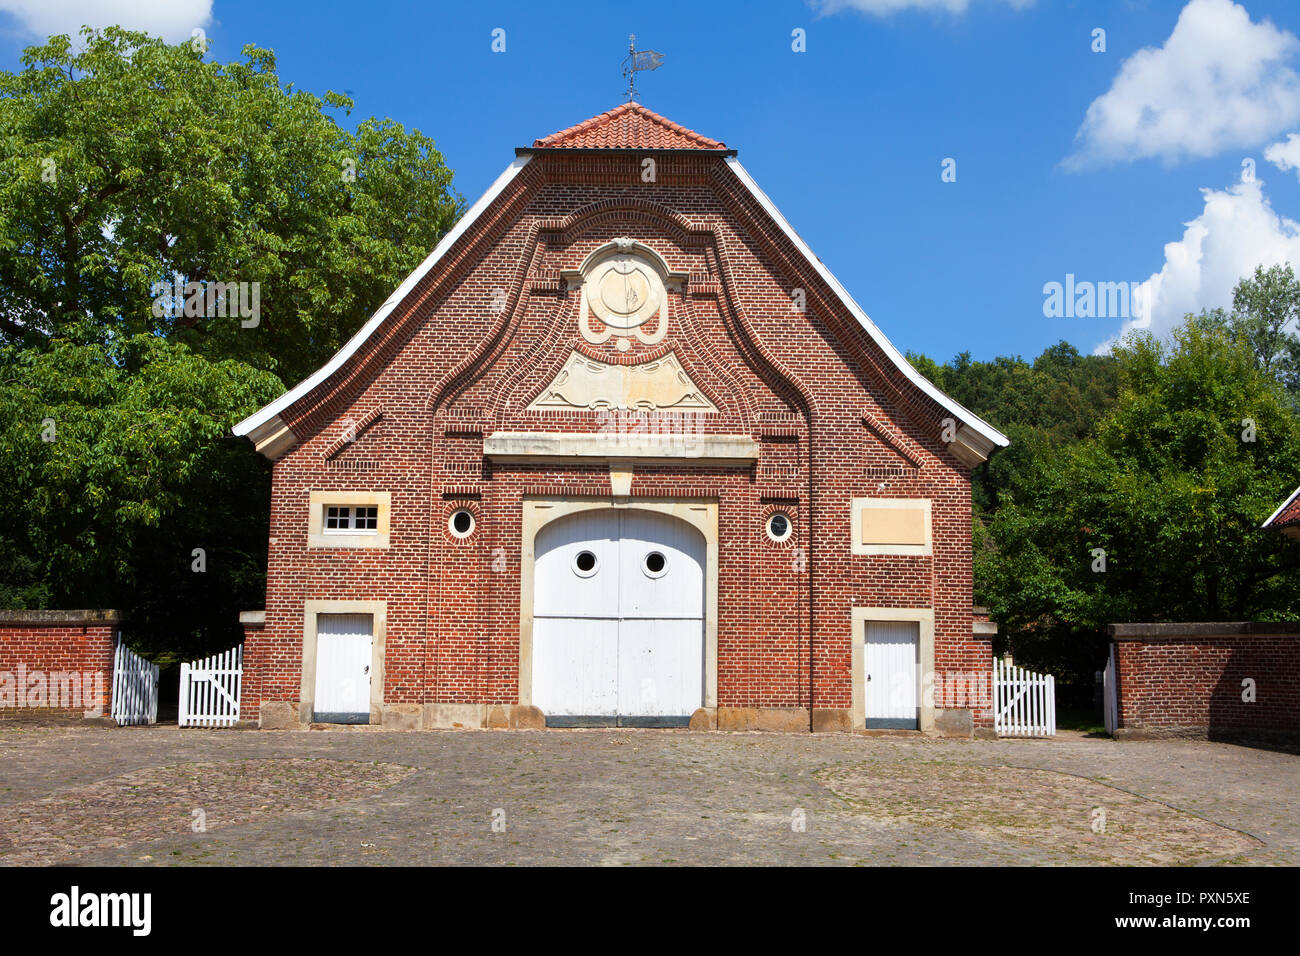 Haus Rüschhaus, Nienberge, Münster, North Rhine-Westphalia, Germany; Europe Stock Photo